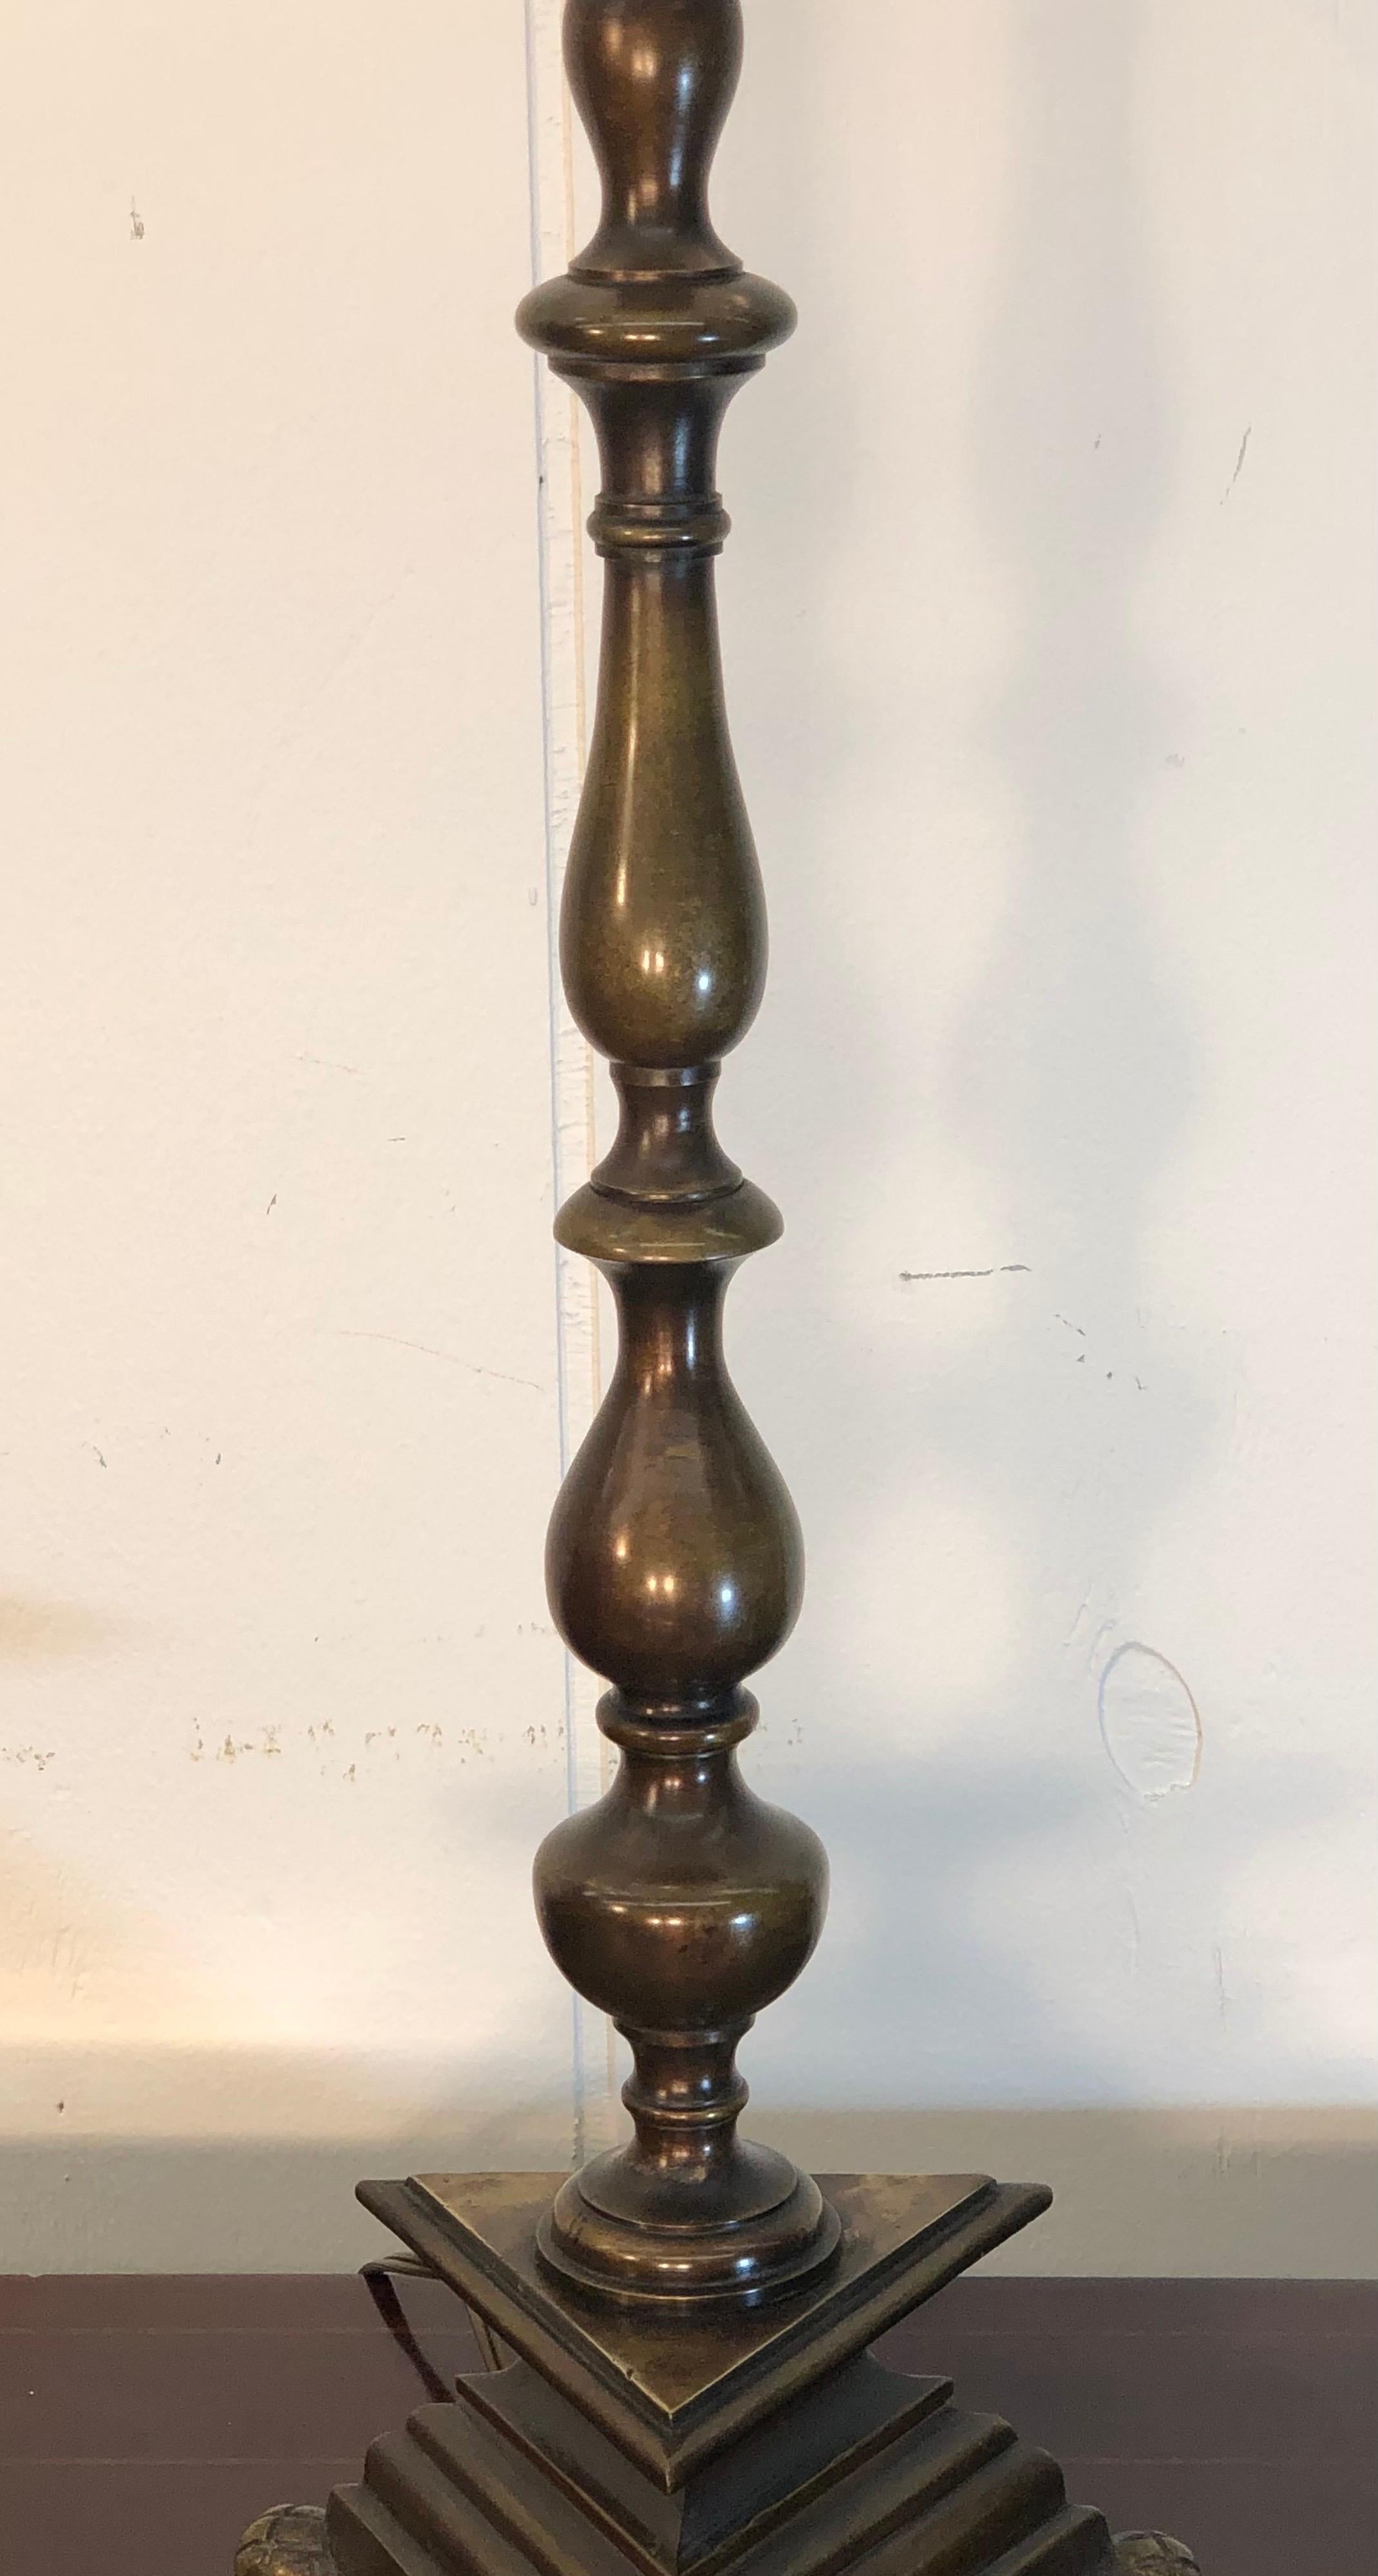 Paar Bronzelampen im niederländischen Kolonialstil, frühes 20. Jahrhundert (Patiniert)